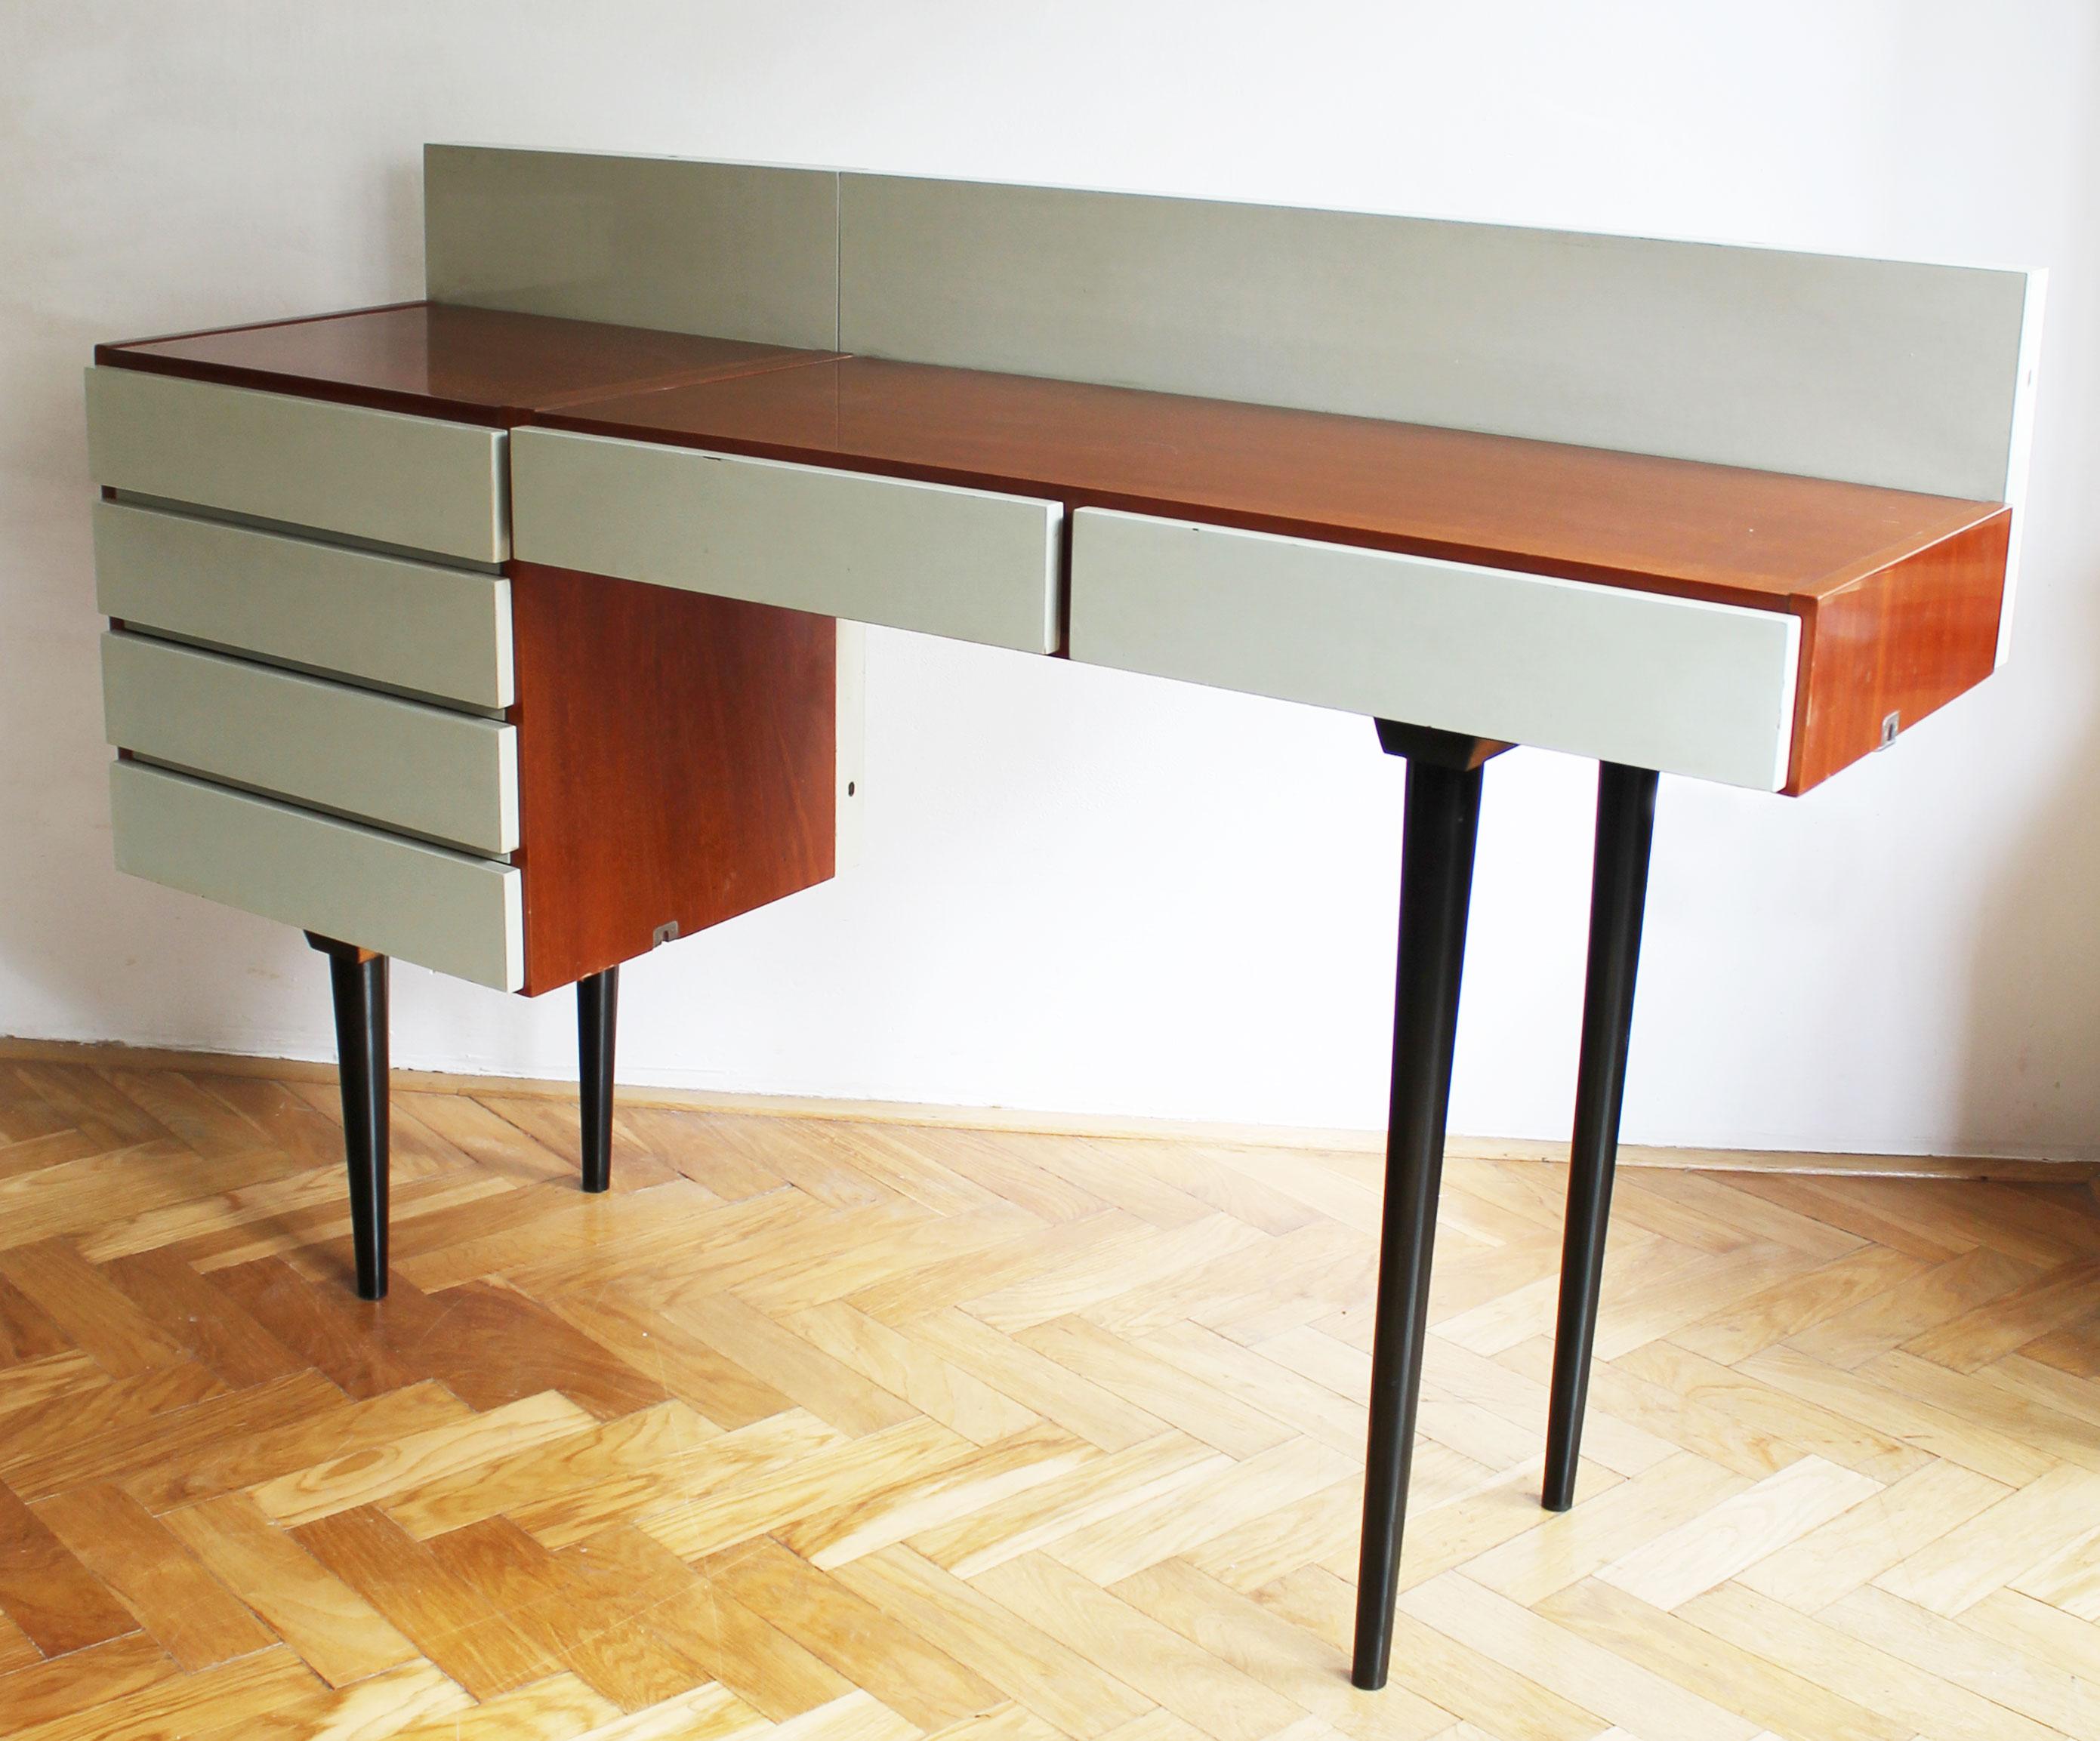 Dieser Schreibtisch war Teil eines modularen Wohnzimmersets und wurde in Collaboration von den Architekten Frantisek Mezulanik und Mojmir Pozar entworfen. Das Set wurde von UP Zavody in ihrem Werk in Bucovice bei Brünn hergestellt.

Dieser